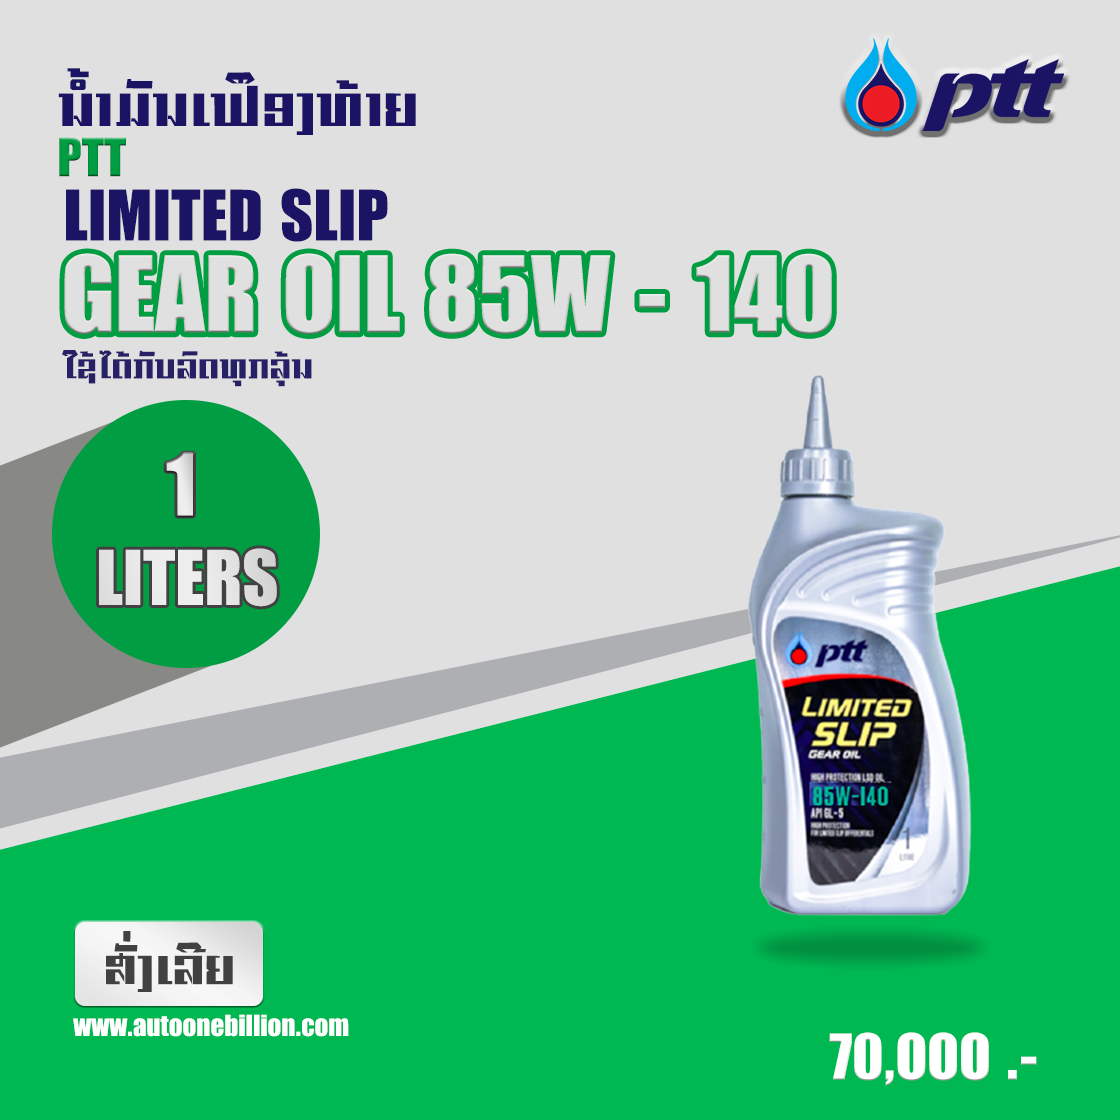 ນ້ຳມັນເຟຶອງທ້າຍ PTT LIMITED SLIP GEAR OIL 85-140 1  ລິດ